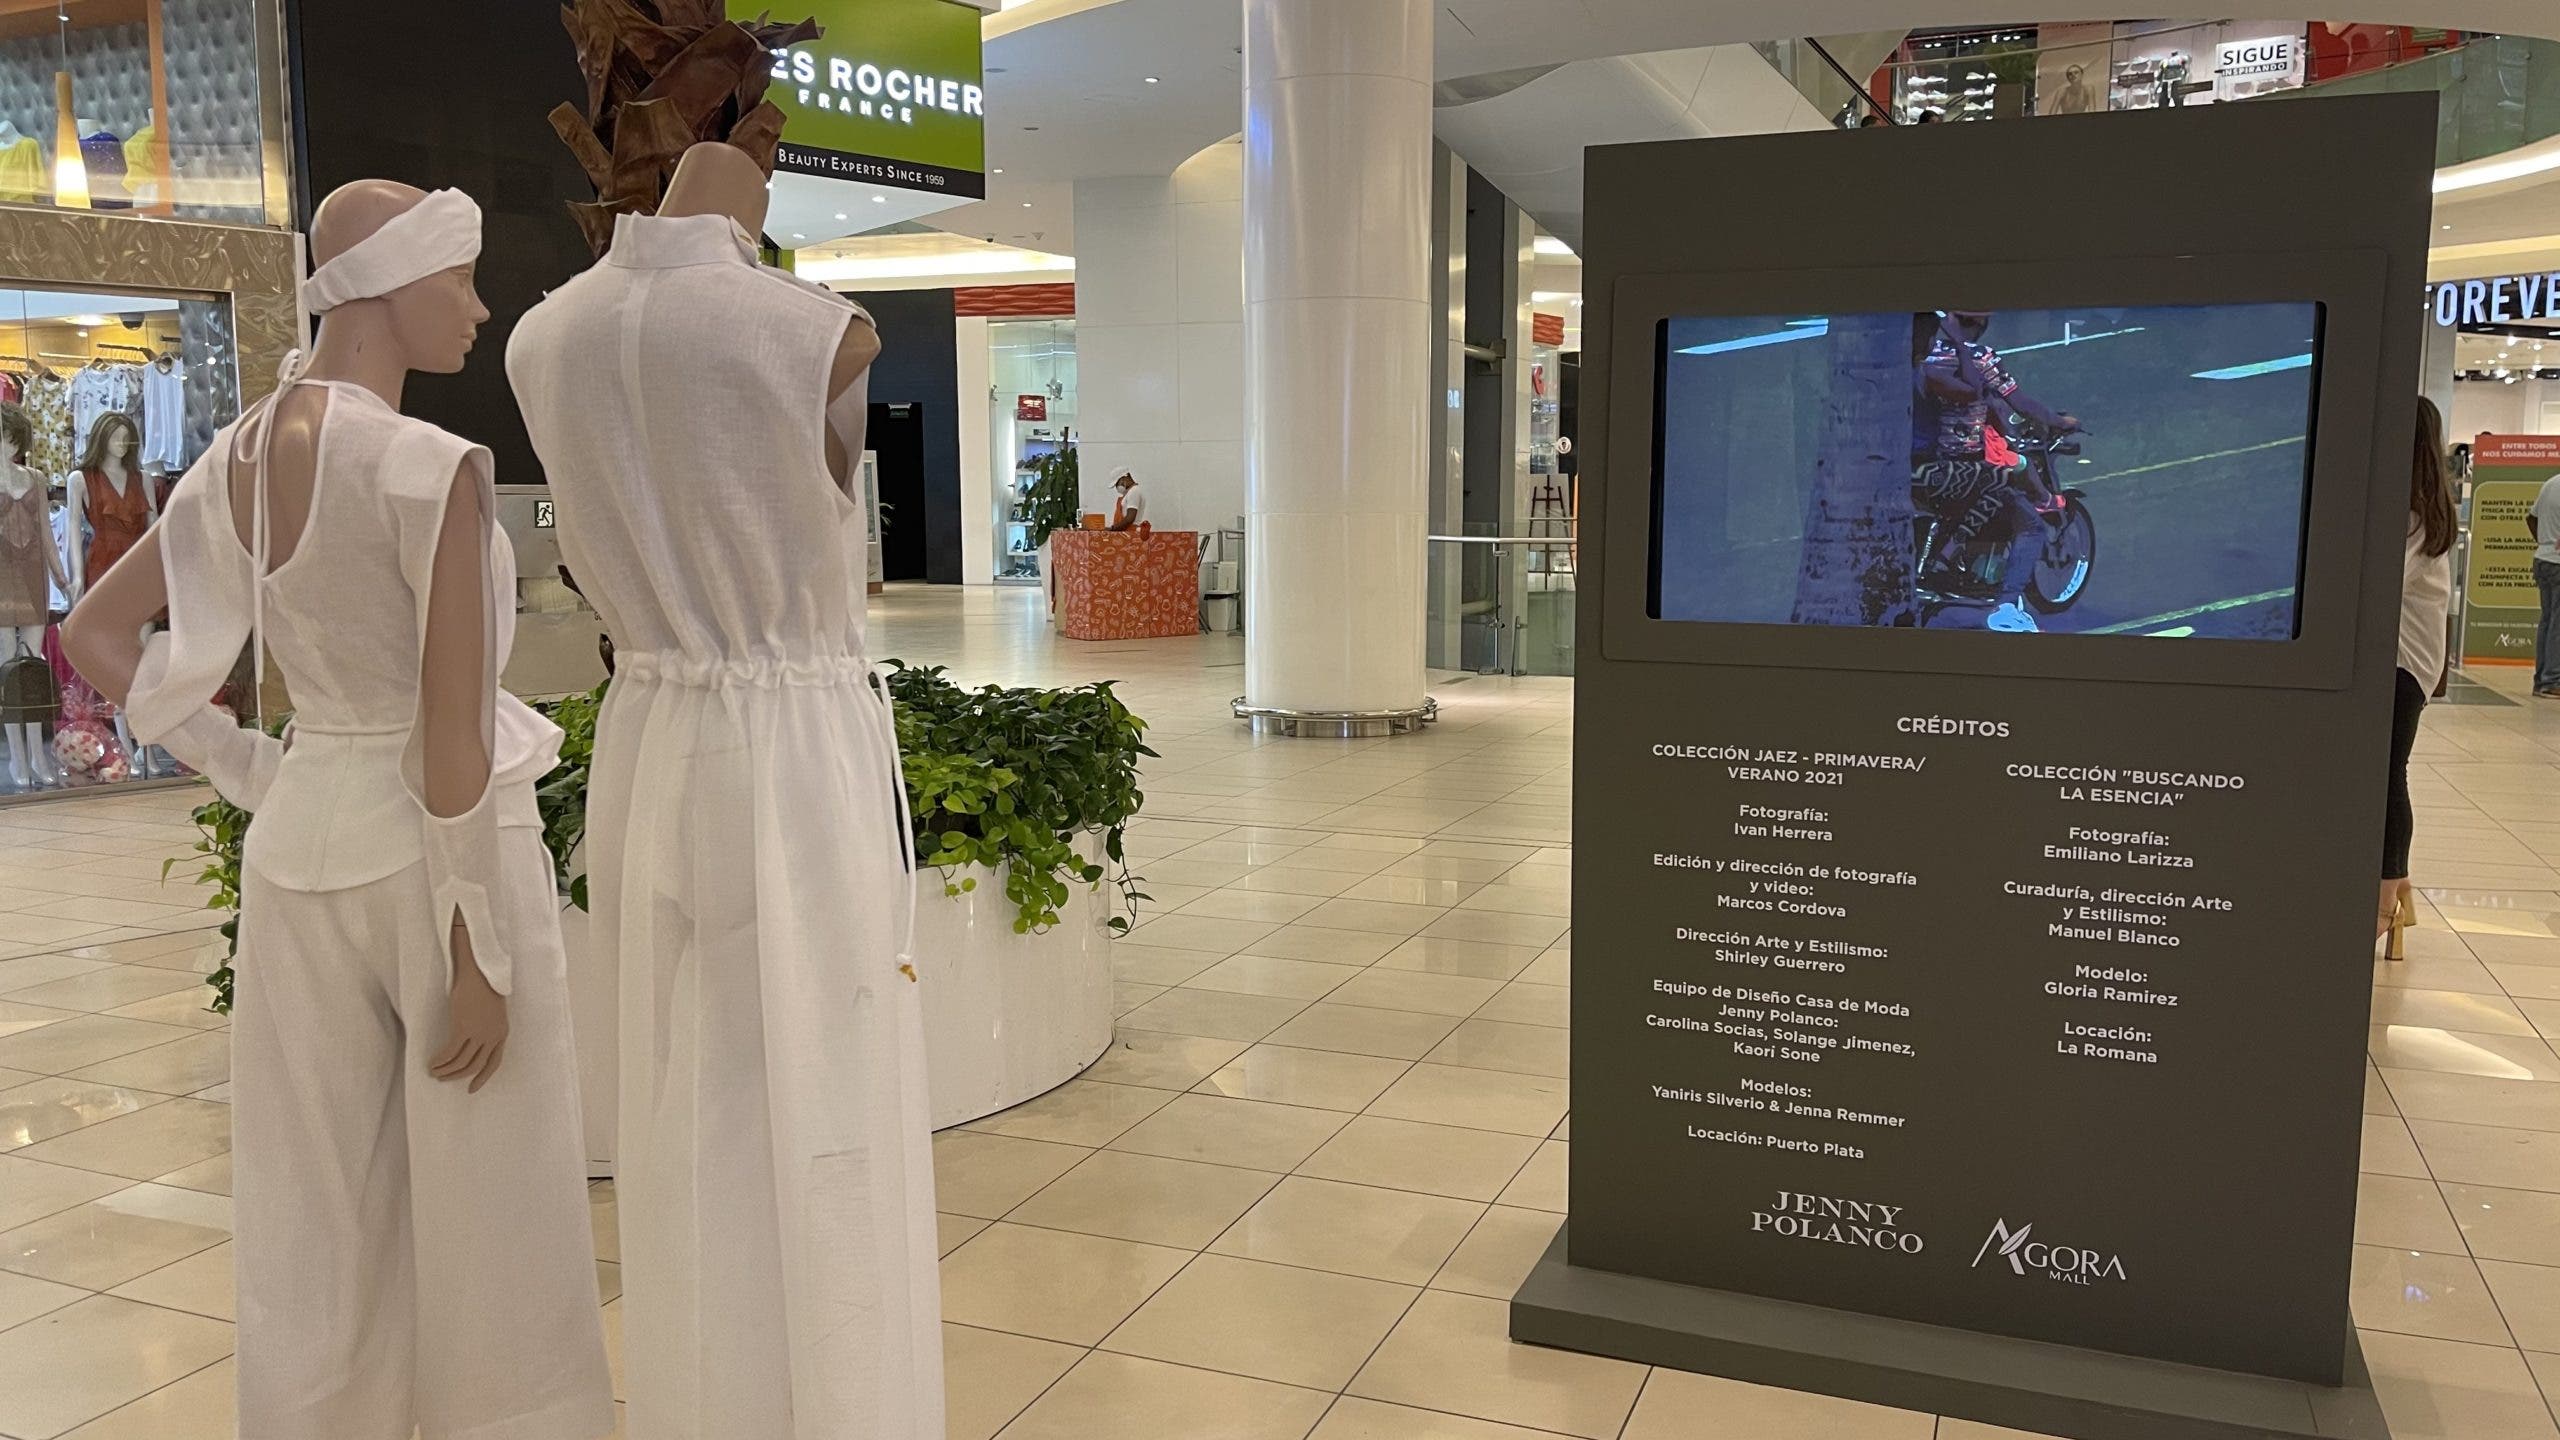 Ágora Mall celebra la vida y legado de Jenny Polanco con exposición “Buscando su Esencia”